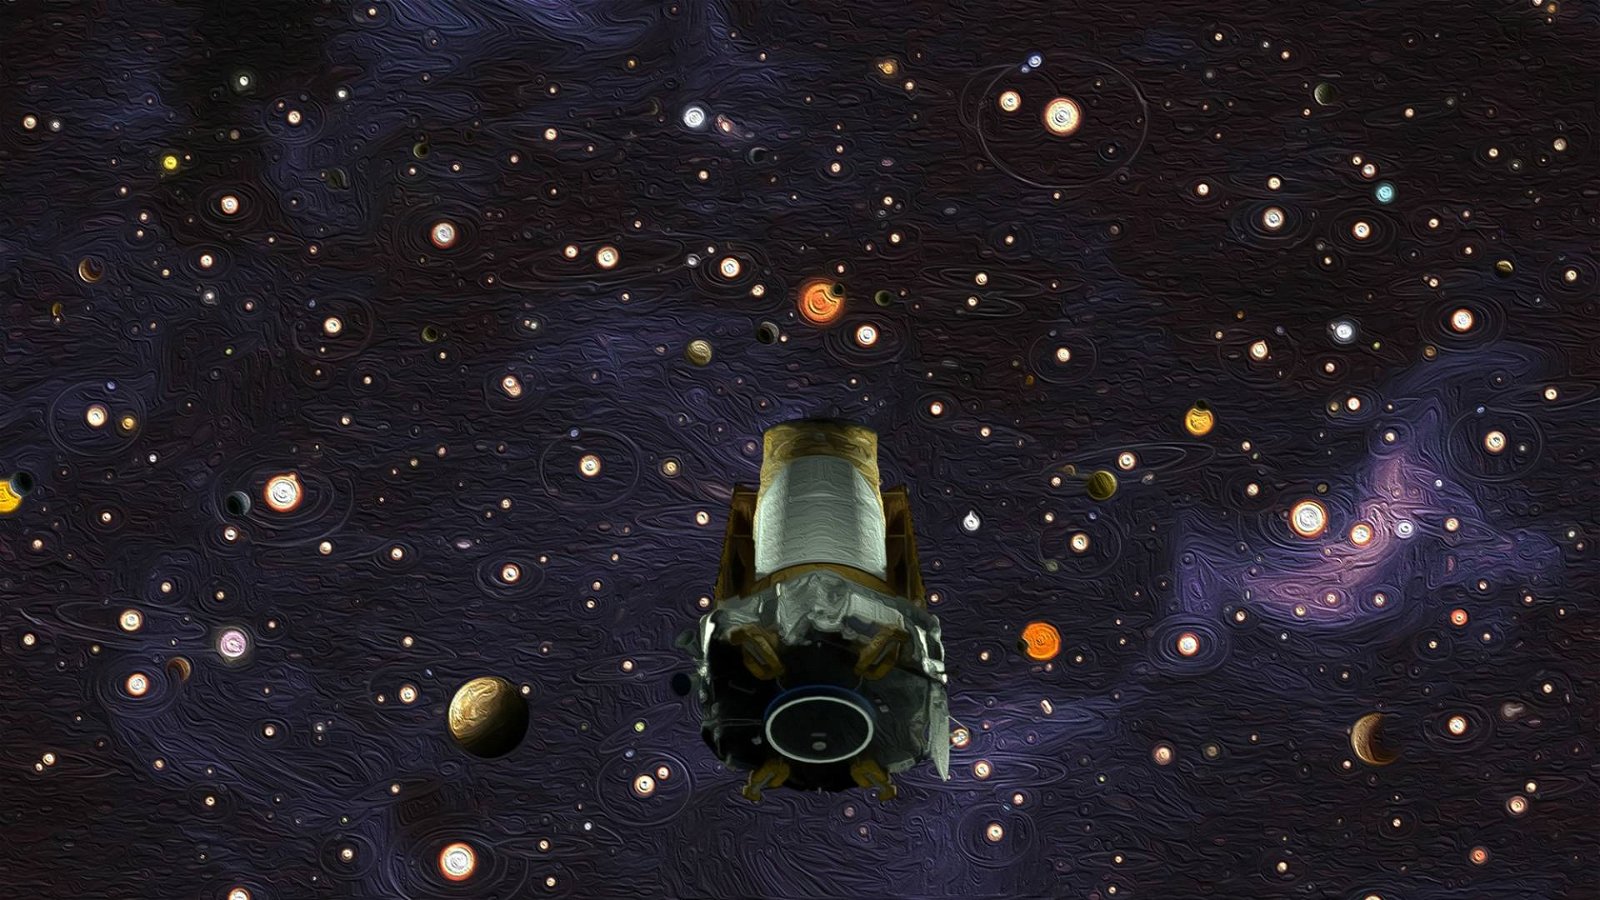 Immagine di Telescopio spaziale James Webb, il 18 dicembre è la data di lancio ufficiale